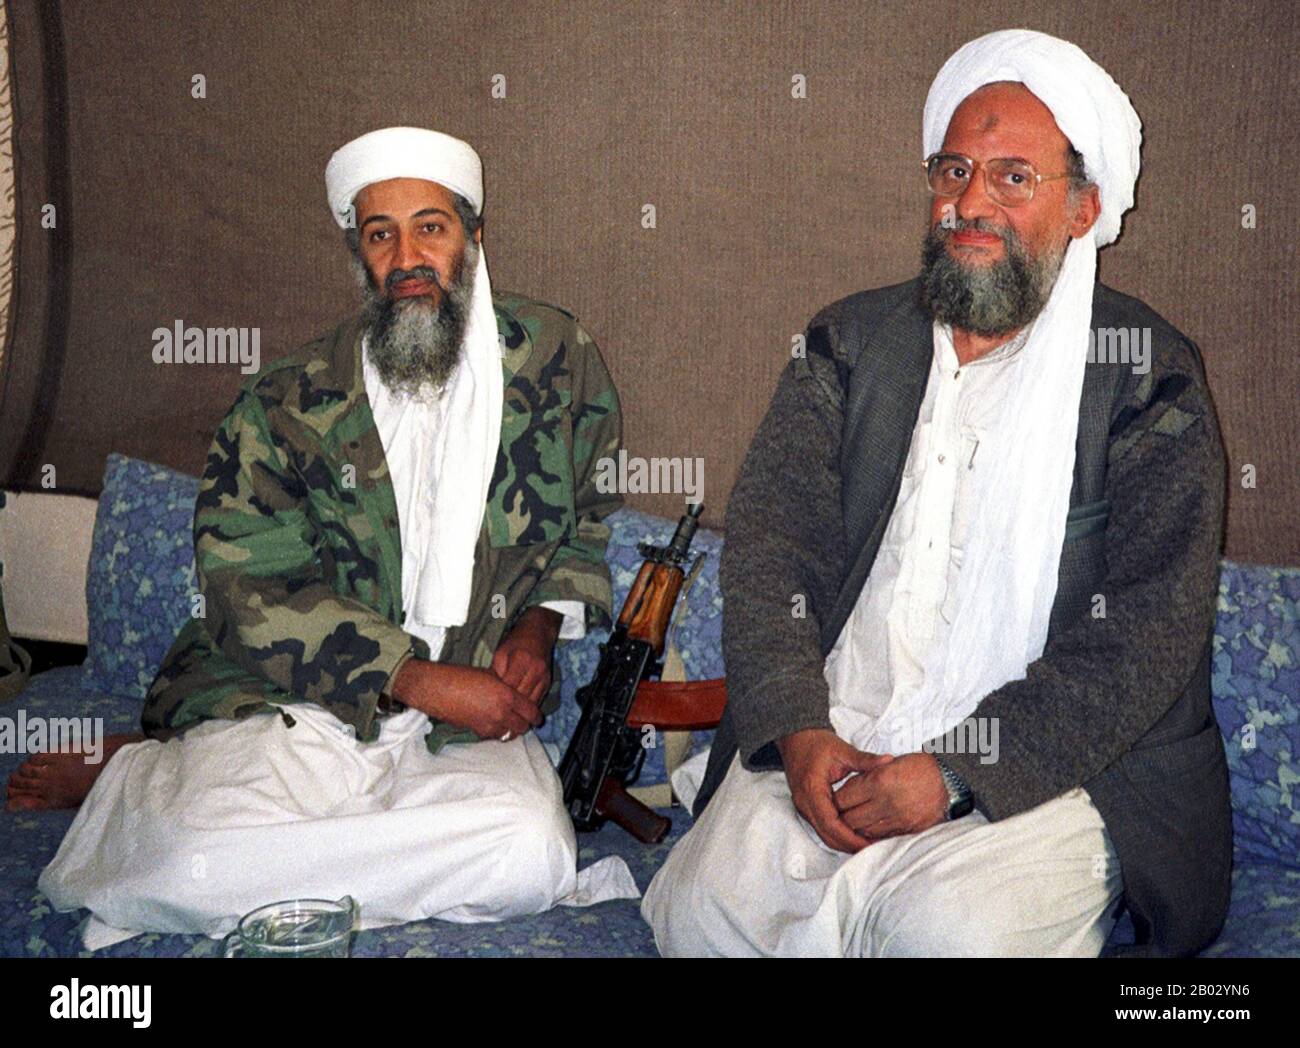 Afghanistan: Osama bin Laden (10. März 1957 – 2. Mai 2011) Gründer von Al-Qaida und prominenter Dschihadi (links) mit seinem Stellvertreter und Nachfolger Ayman al Zawahiri (19. Juni 1951 - 31. Juli 2022), 10. November 2001. Foto von Hamid mir (CC BY-SA 3,0). Osama bin Mohammed bin Awad bin Laden war der Gründer von al-Qaida, der dschihadistischen Organisation, die für die Angriffe auf die Vereinigten Staaten vom 11. September und andere Massenangriffe auf zivile und militärische Ziele verantwortlich ist. Er war Mitglied der wohlhabenden saudischen bin Laden-Familie. Ayman Mohammed al-Zawahiri war ein ägyptischer und ehemaliger Anführer der Al-Qaida. Stockfoto